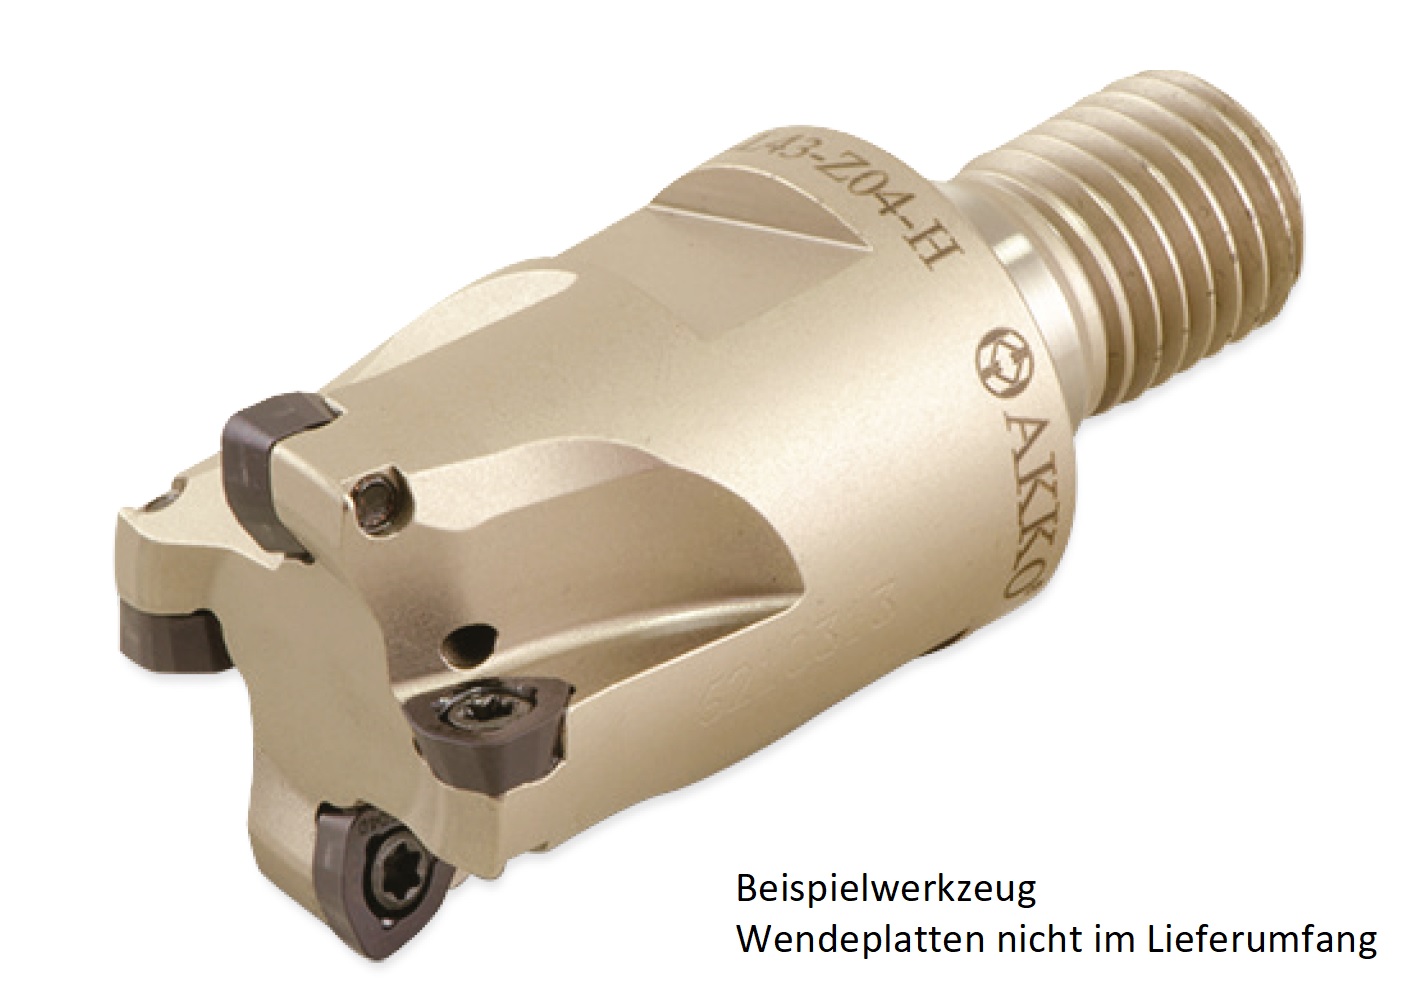 AKKO-Hochvorschub-Einschraubfräser ø 25 mm, kompatibel mit Dijet WDMT 0503..
Gewindeschaft M12, mit Innenkühlung, Z=3